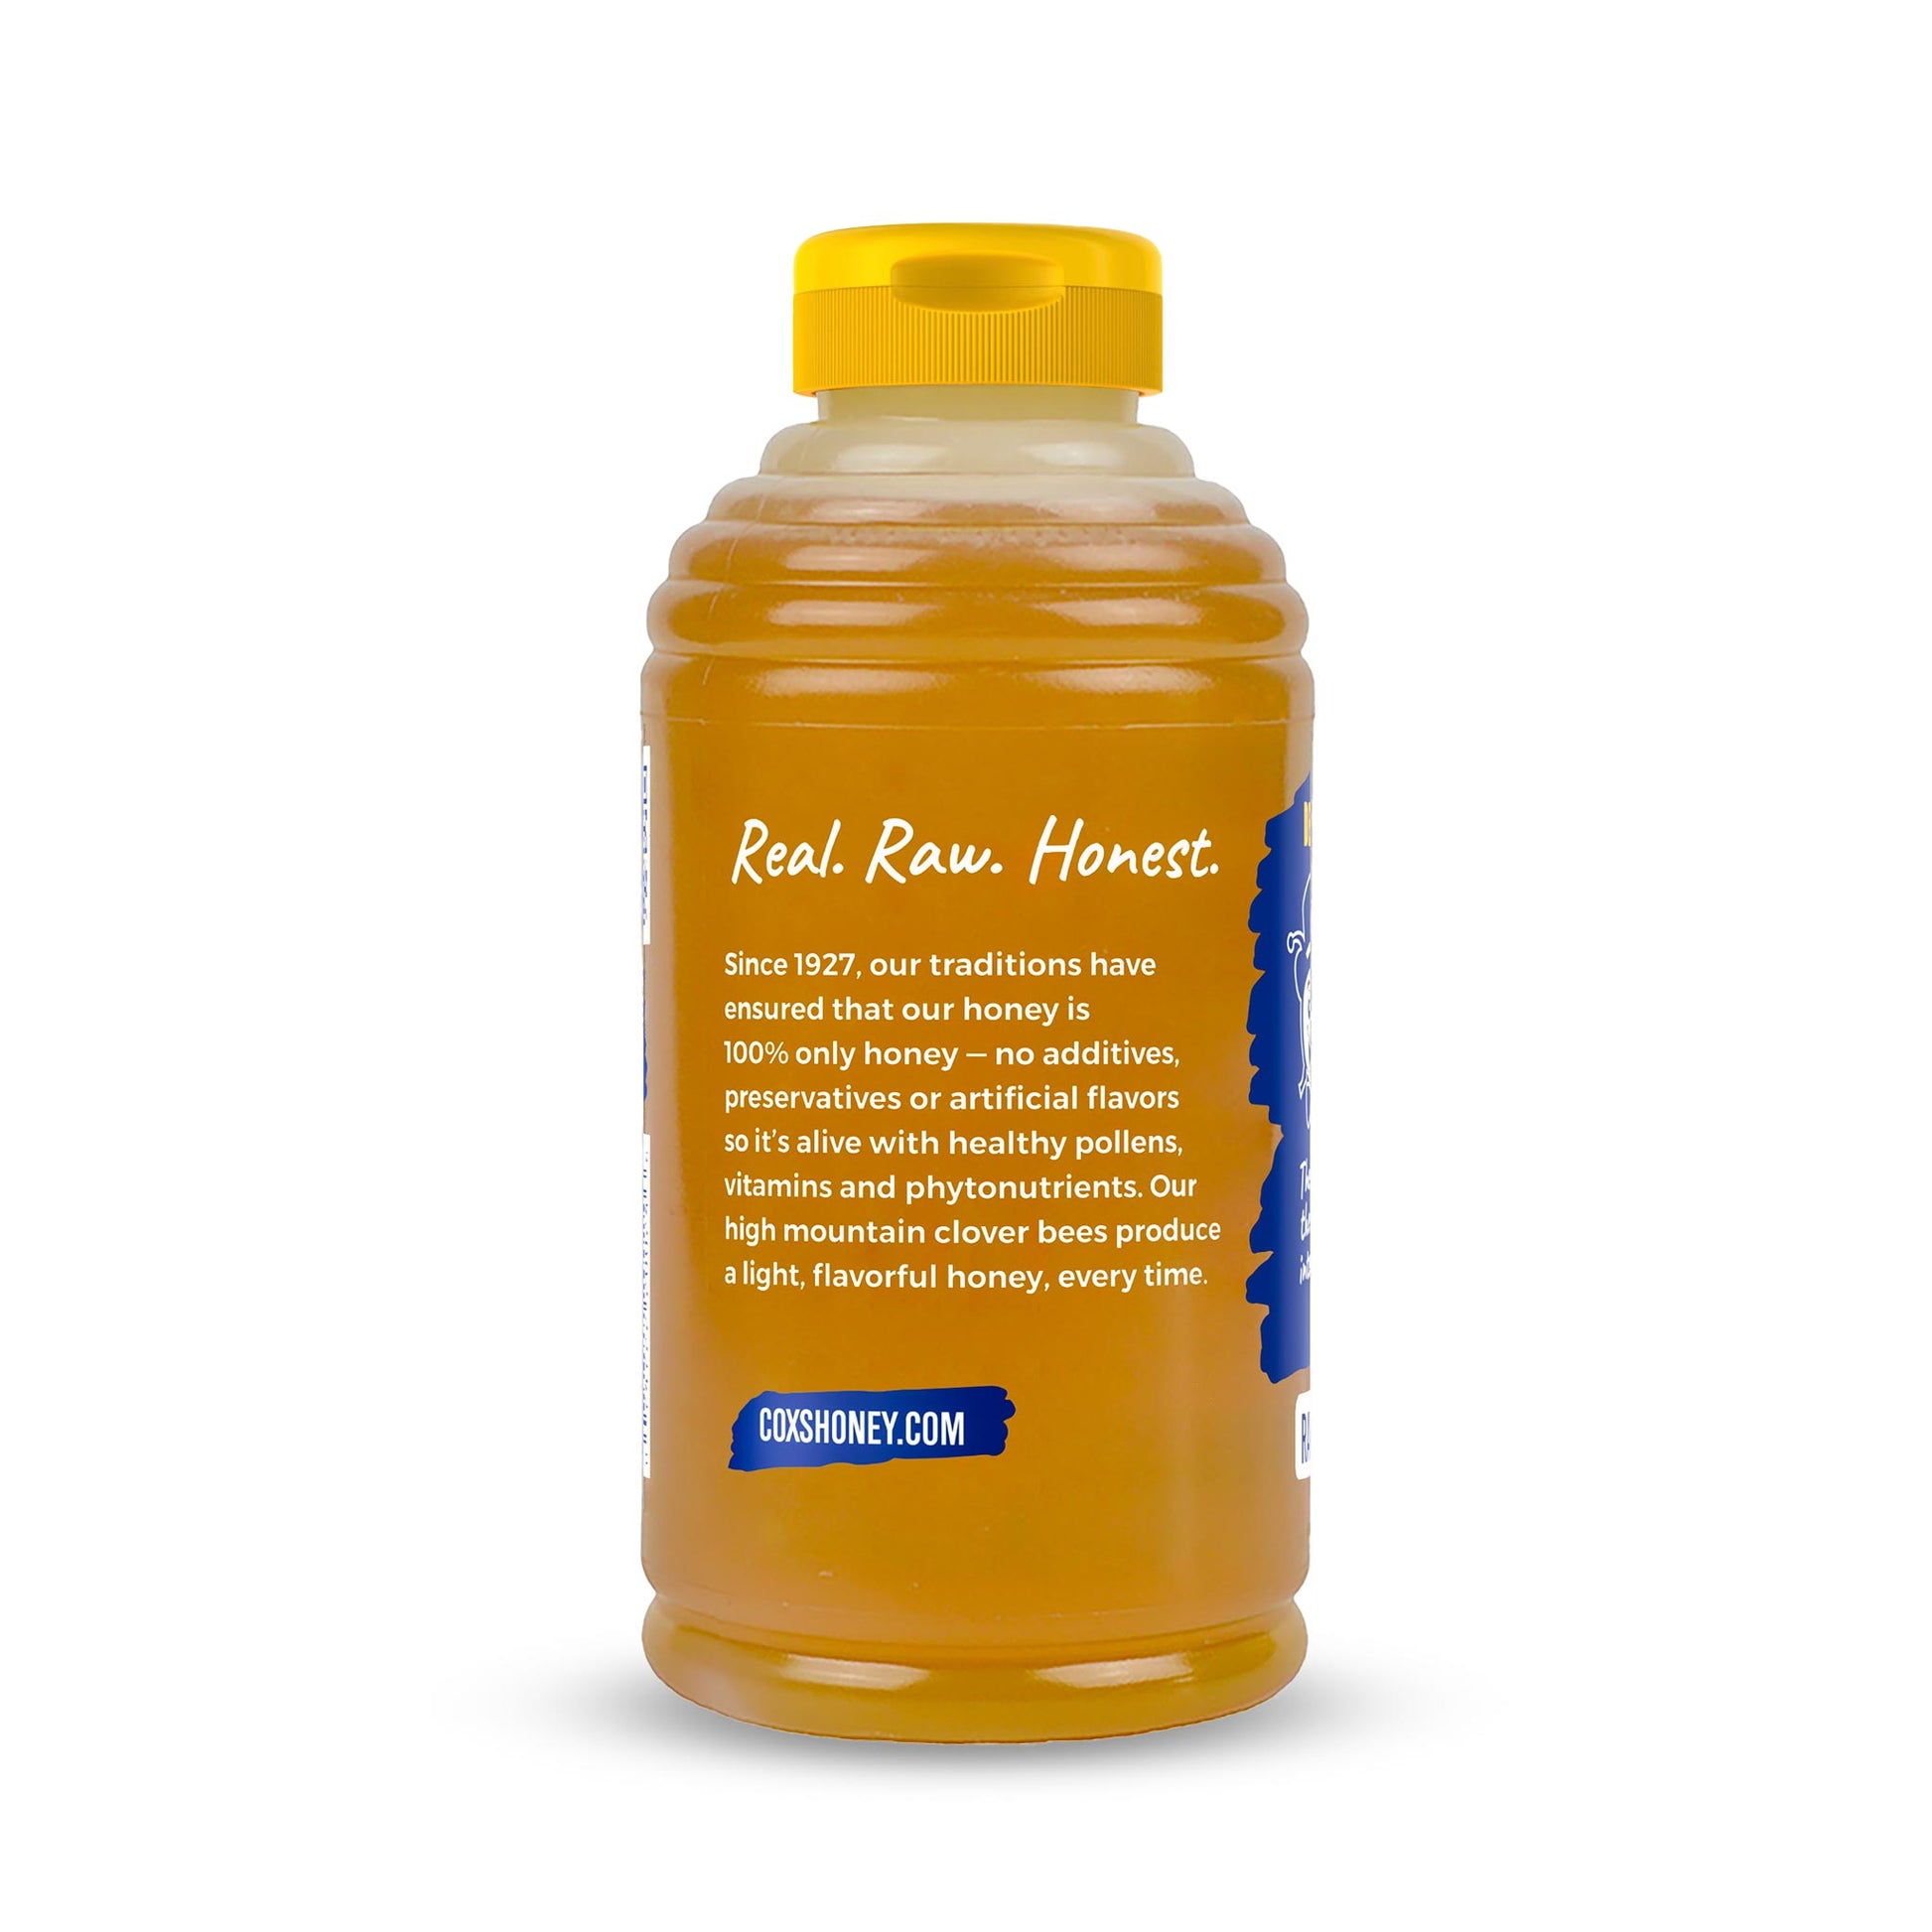 Cox's Honey 24 oz clover honey bottle back view